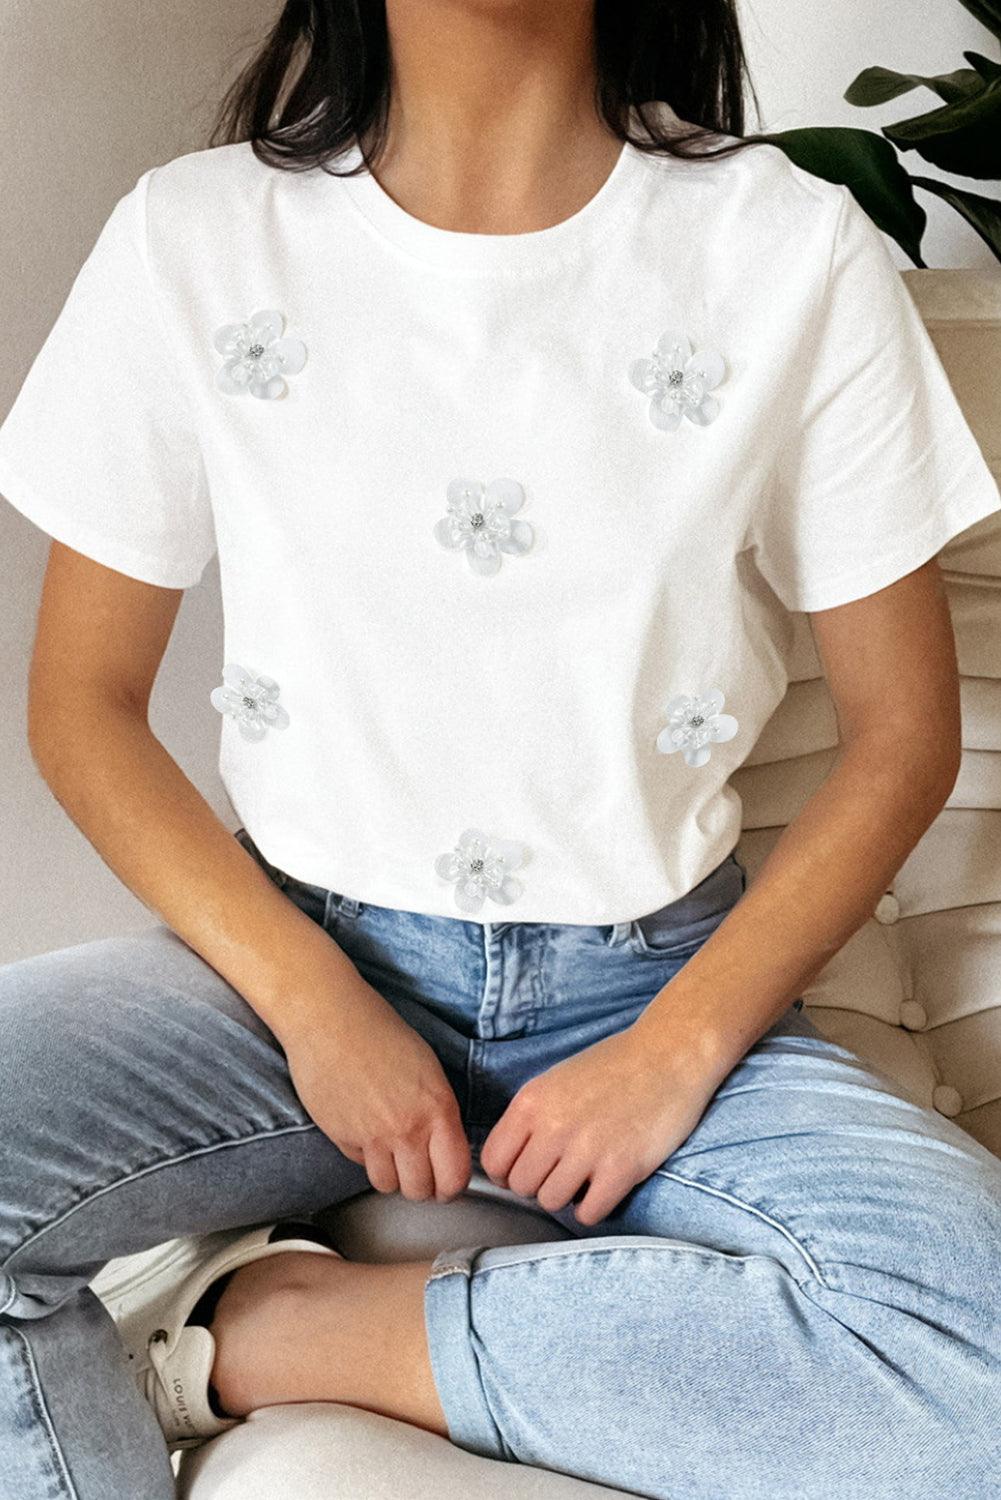 White Flower Applique Round Neck T-shirt - L & M Kee, LLC